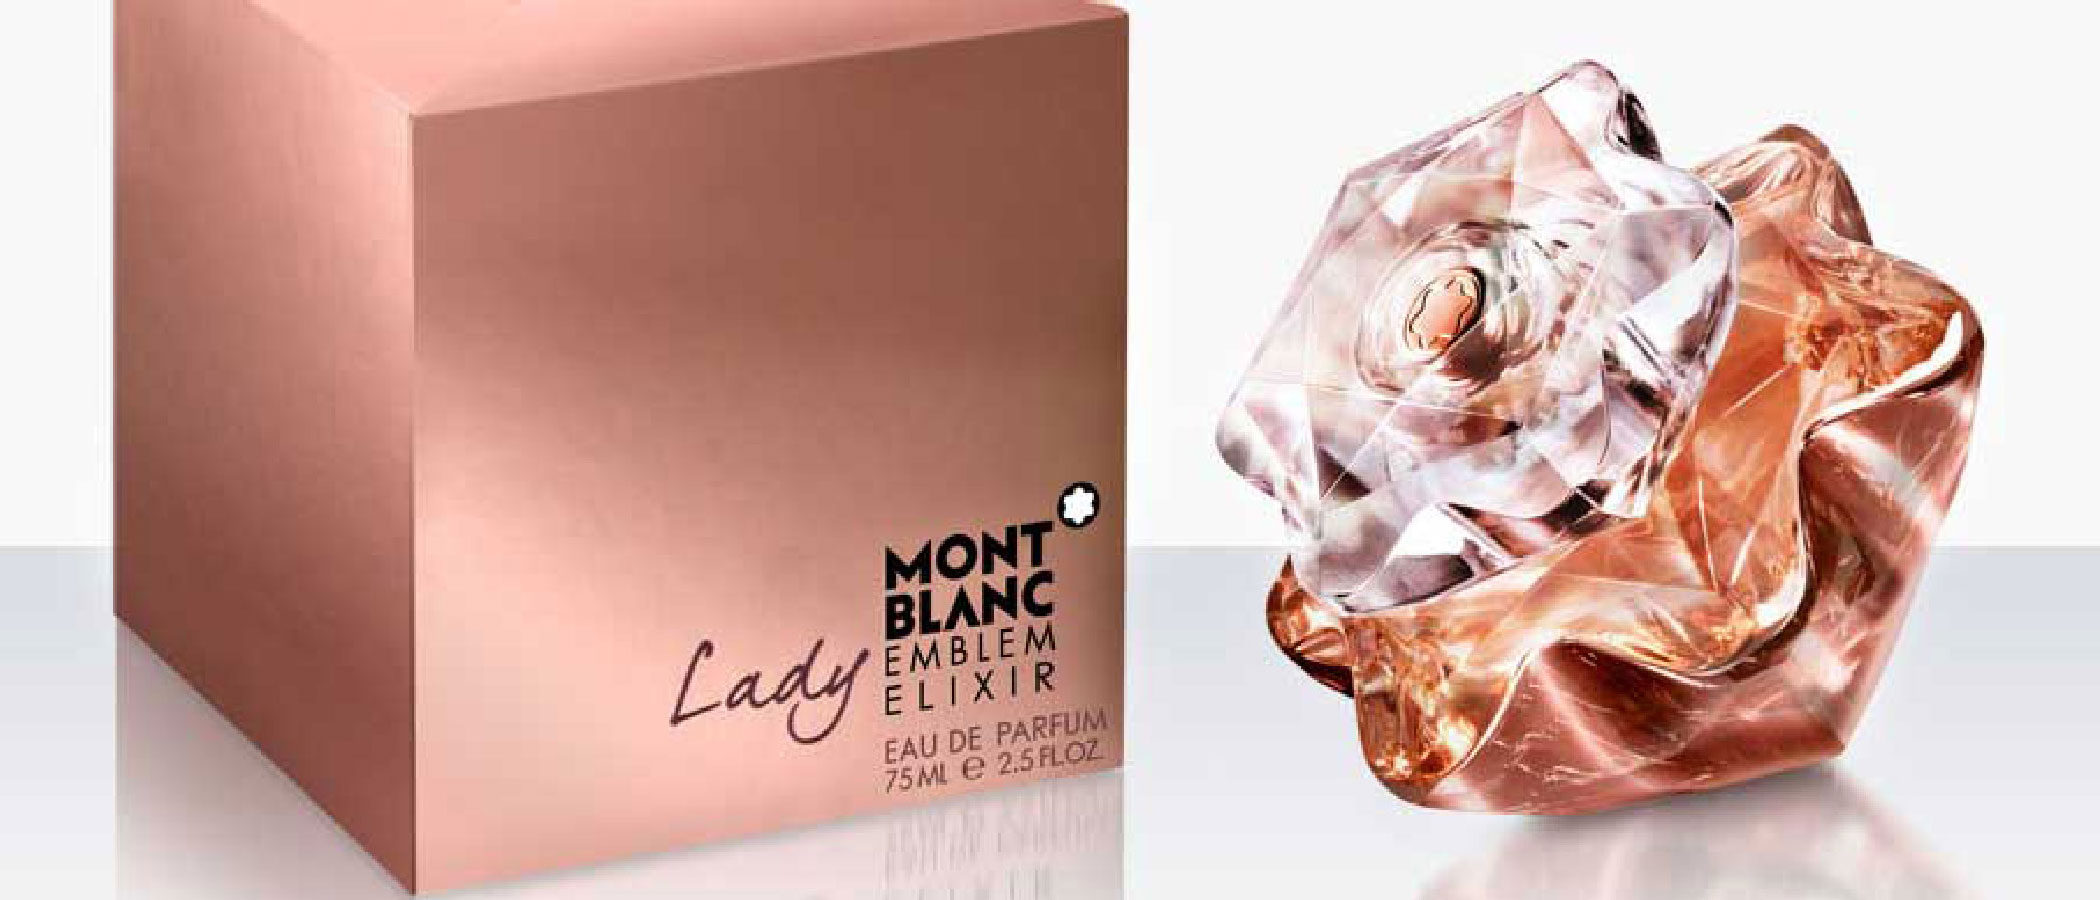 Montblanc reinventa su perfume 'Emblem' y lanza su nueva versión 'Lady Emblem Elixir'